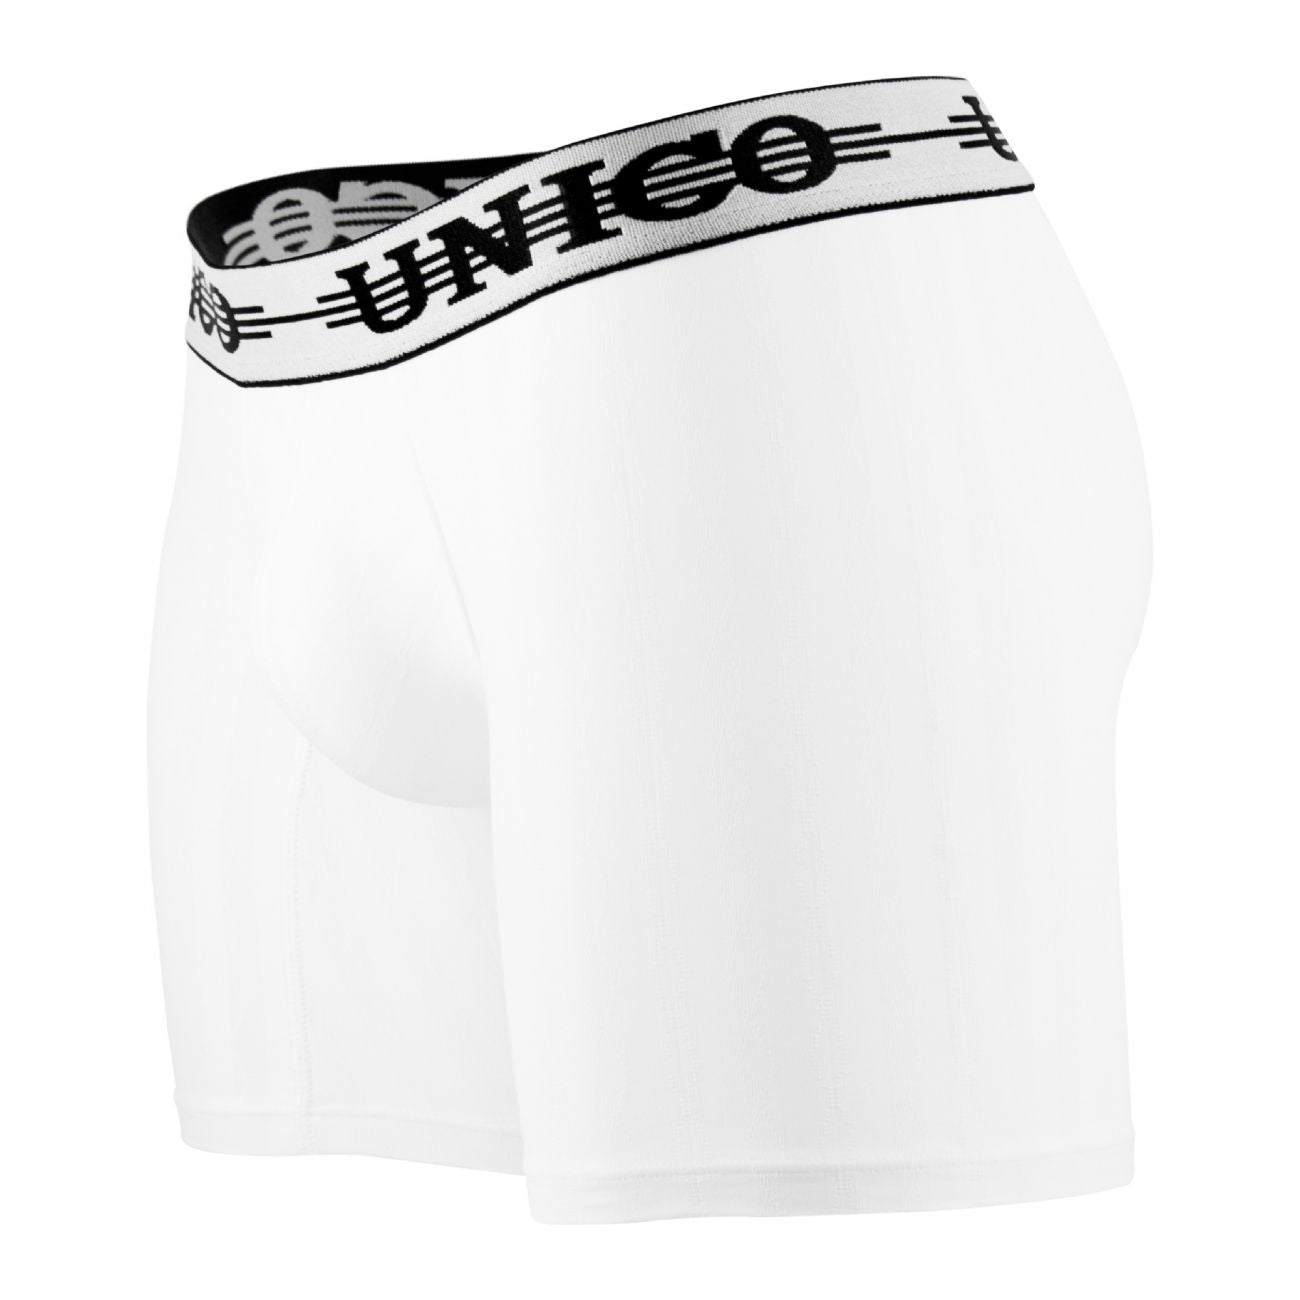 Unico 1802010021000 Boxer Briefs Mantra Color White